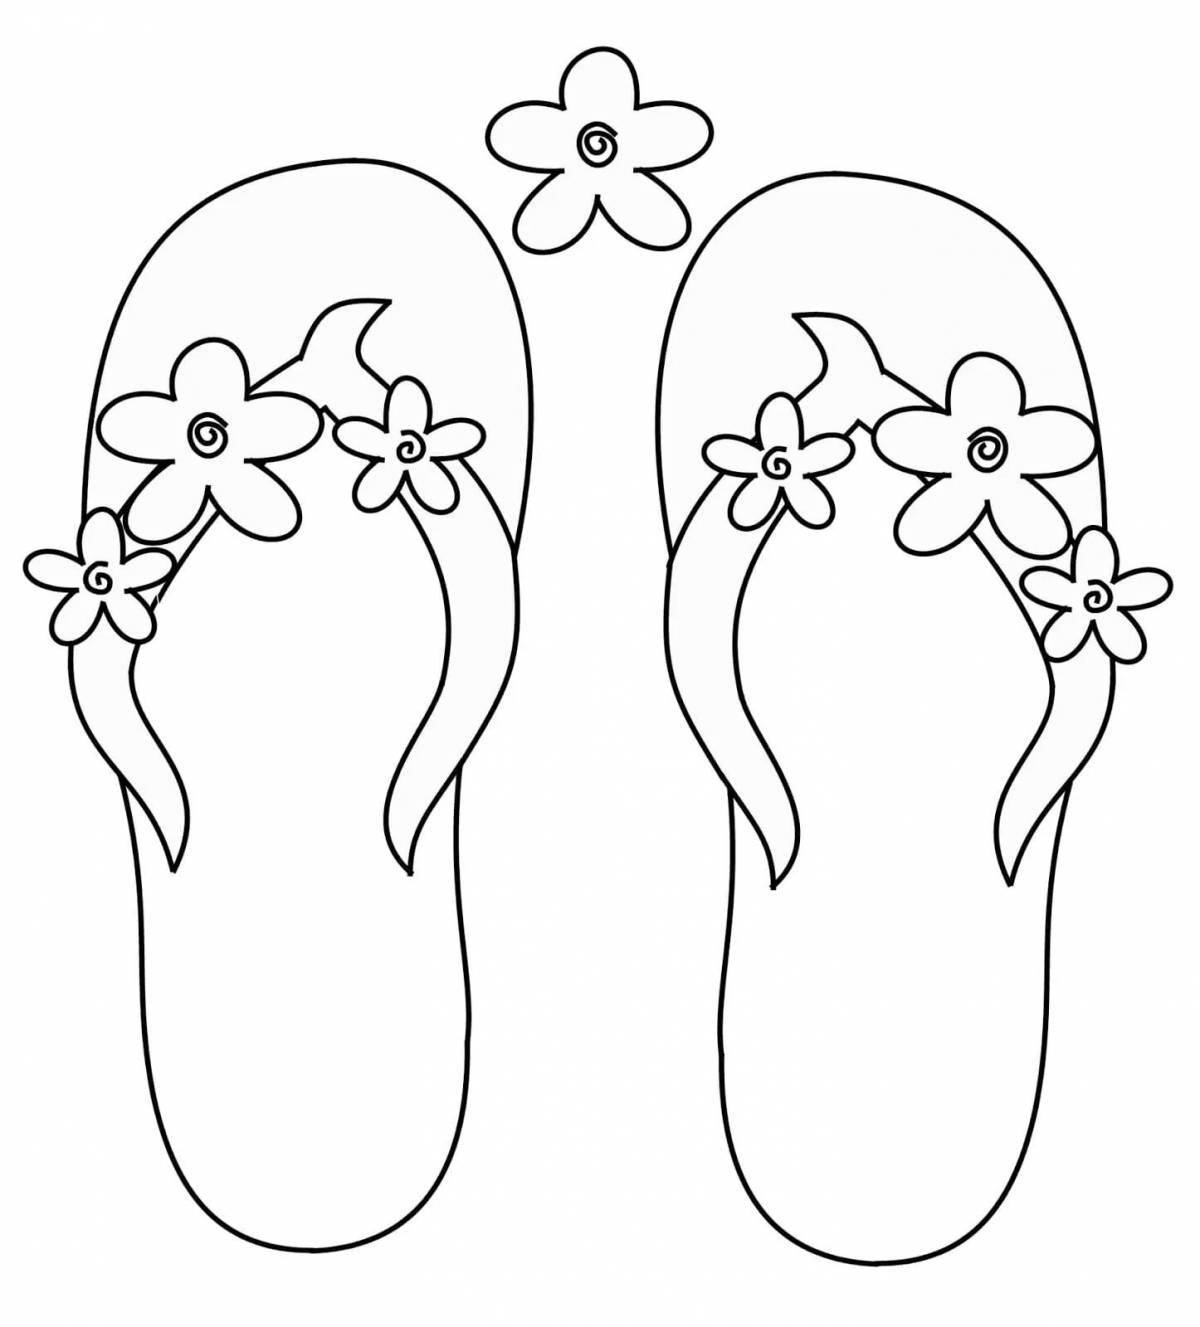 Раскраска славная обувь для малышей 3-4 лет